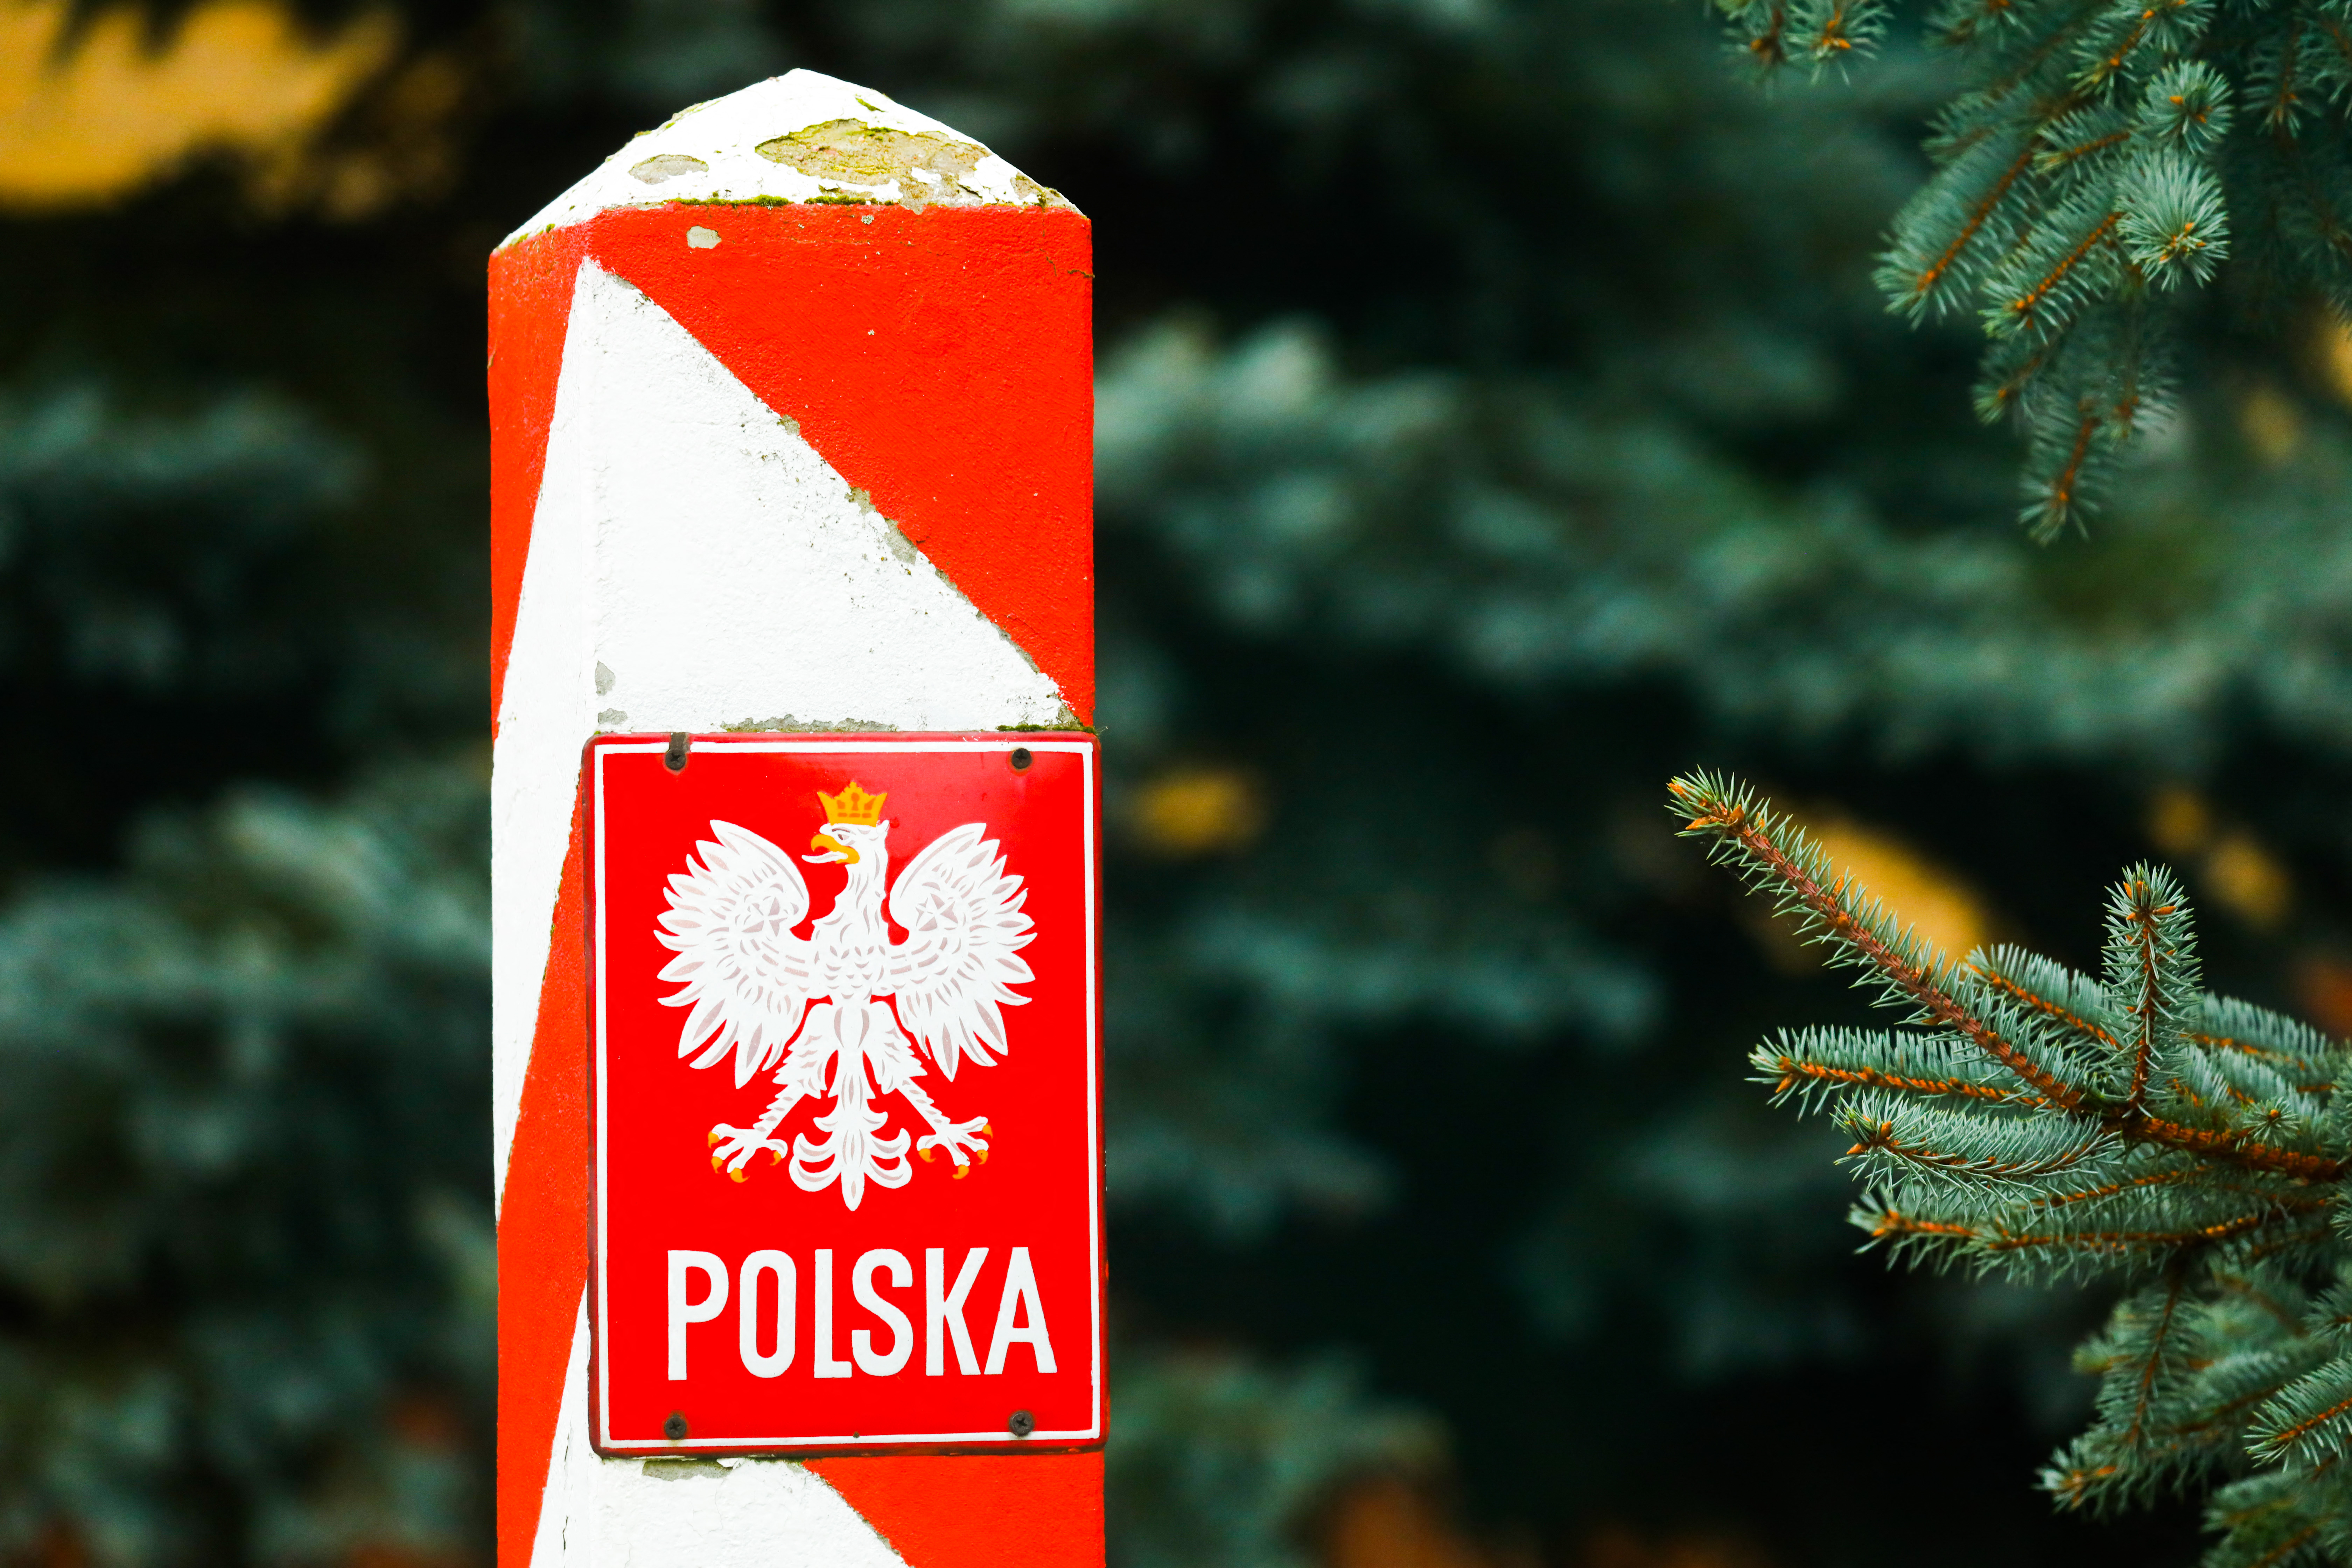 Lengyelország és Fehéroroszország a határaikon átmenő autós forgalmat korlátozva izmoznak egymással